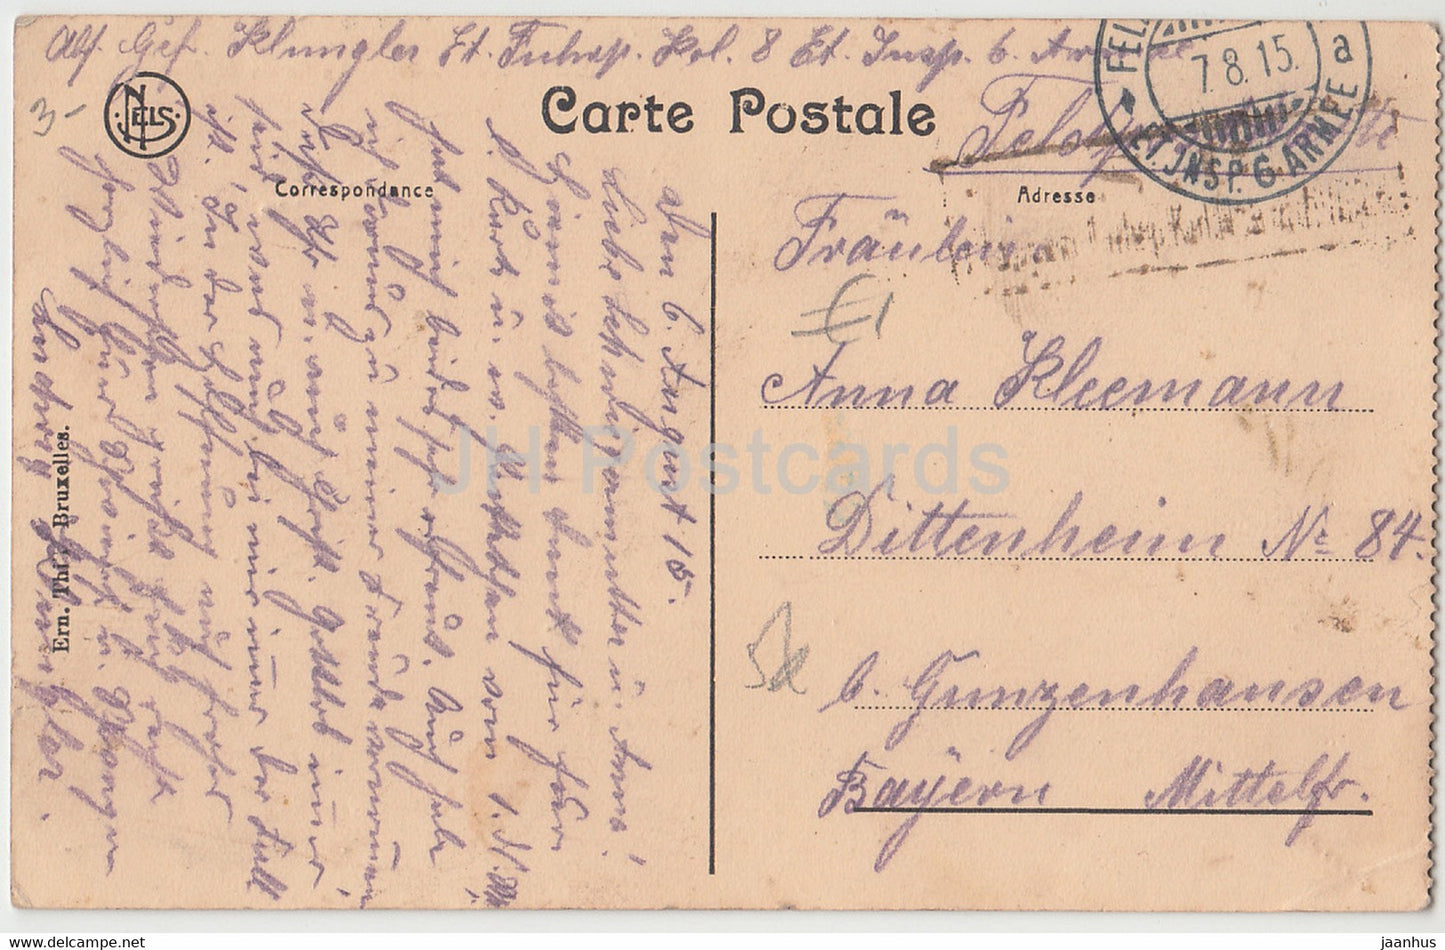 Saint Quentin - Le Palais de Justice - Feldpost - carte postale ancienne - 1915 - France - occasion